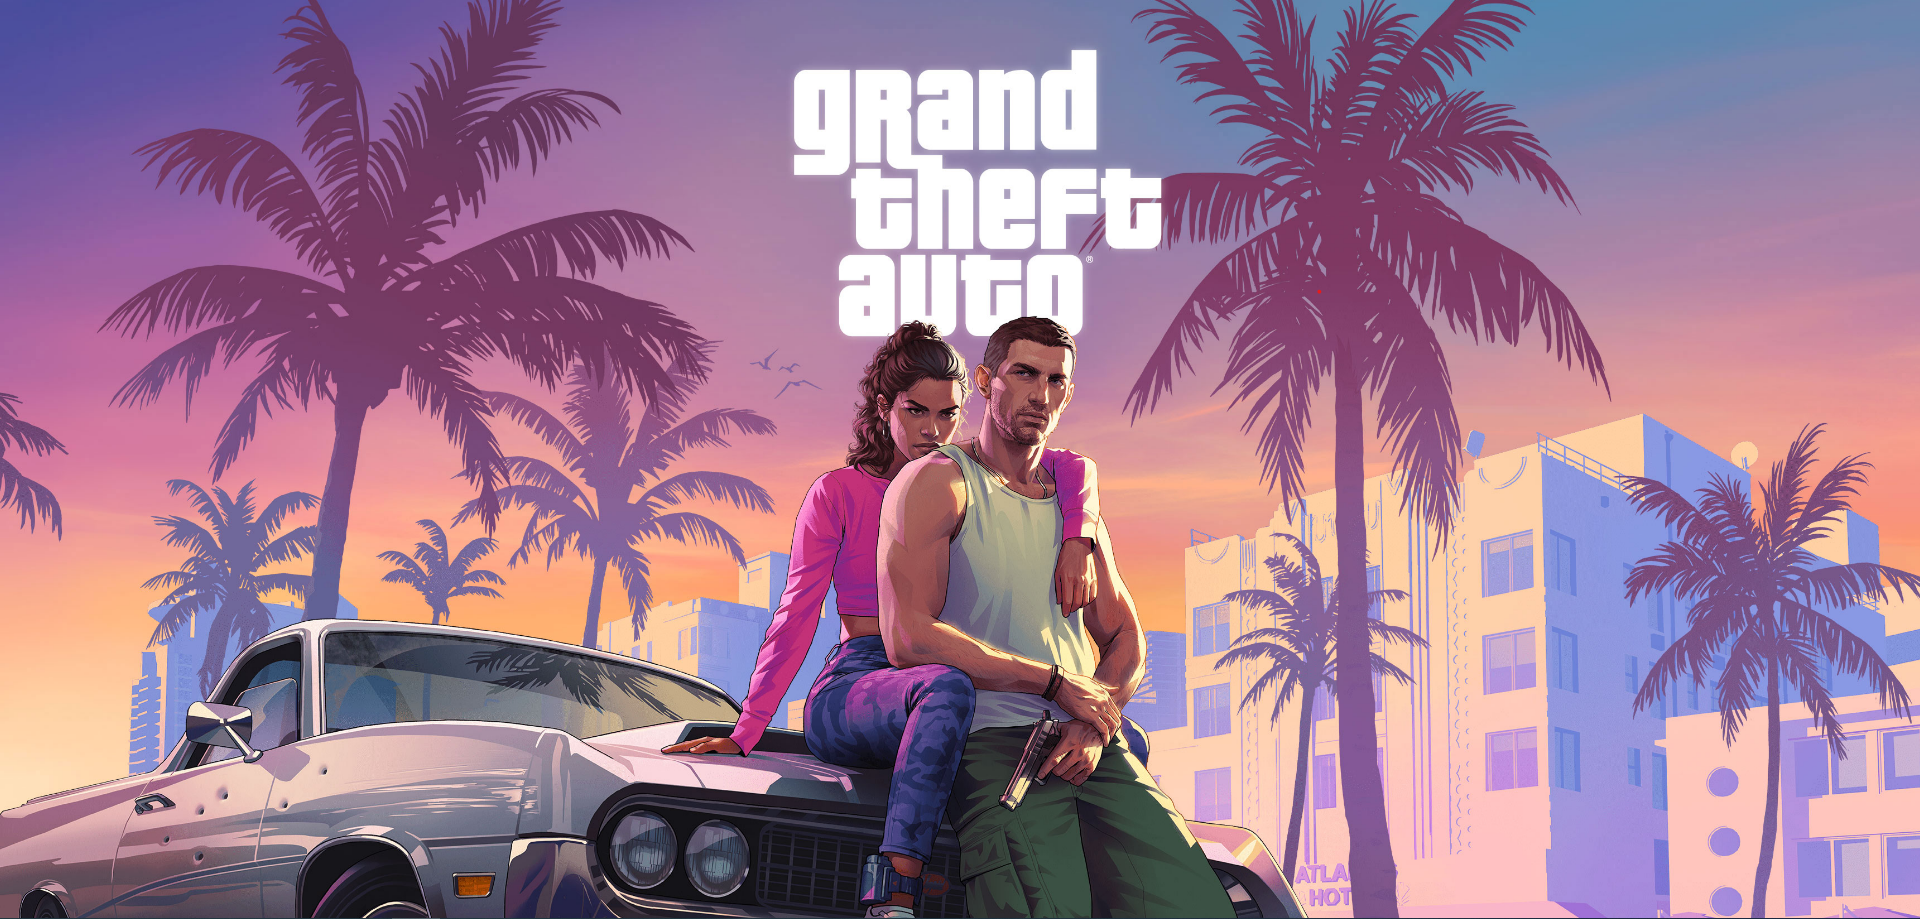 Grand Theft Auto VI kan zomaar eens de belangrijkste game ooit worden